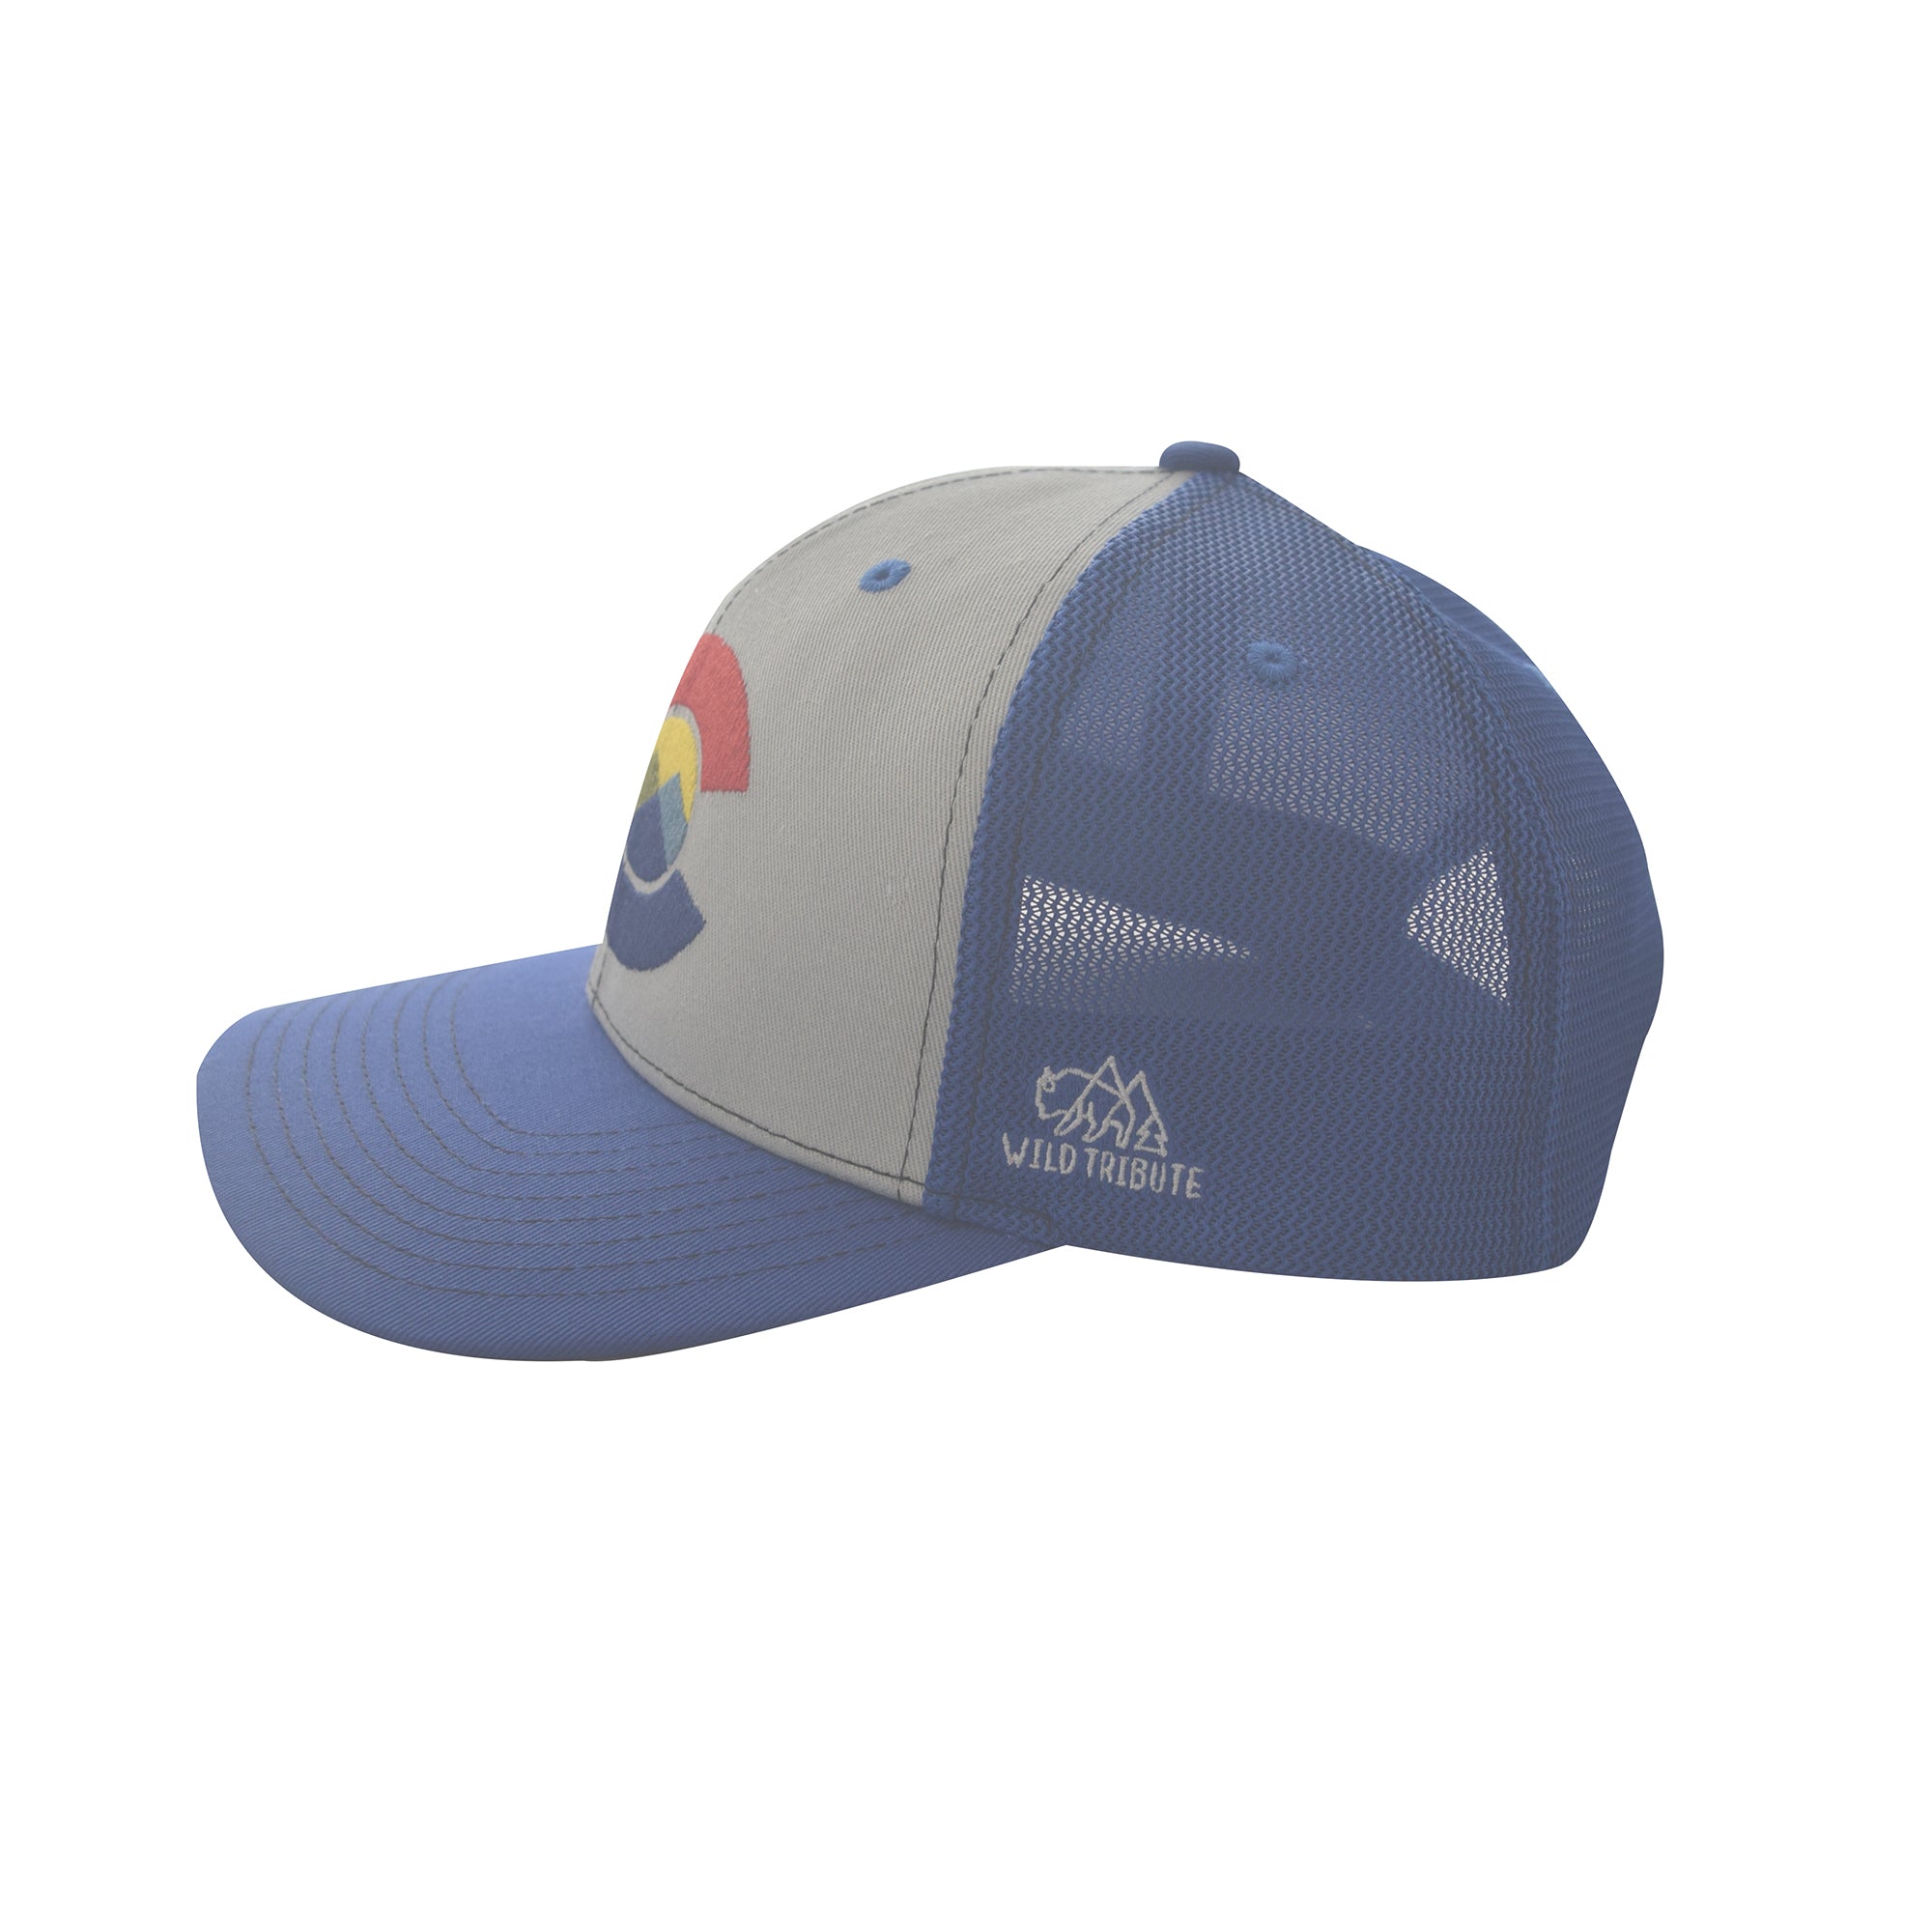 Colorado Logo Trucker Hat